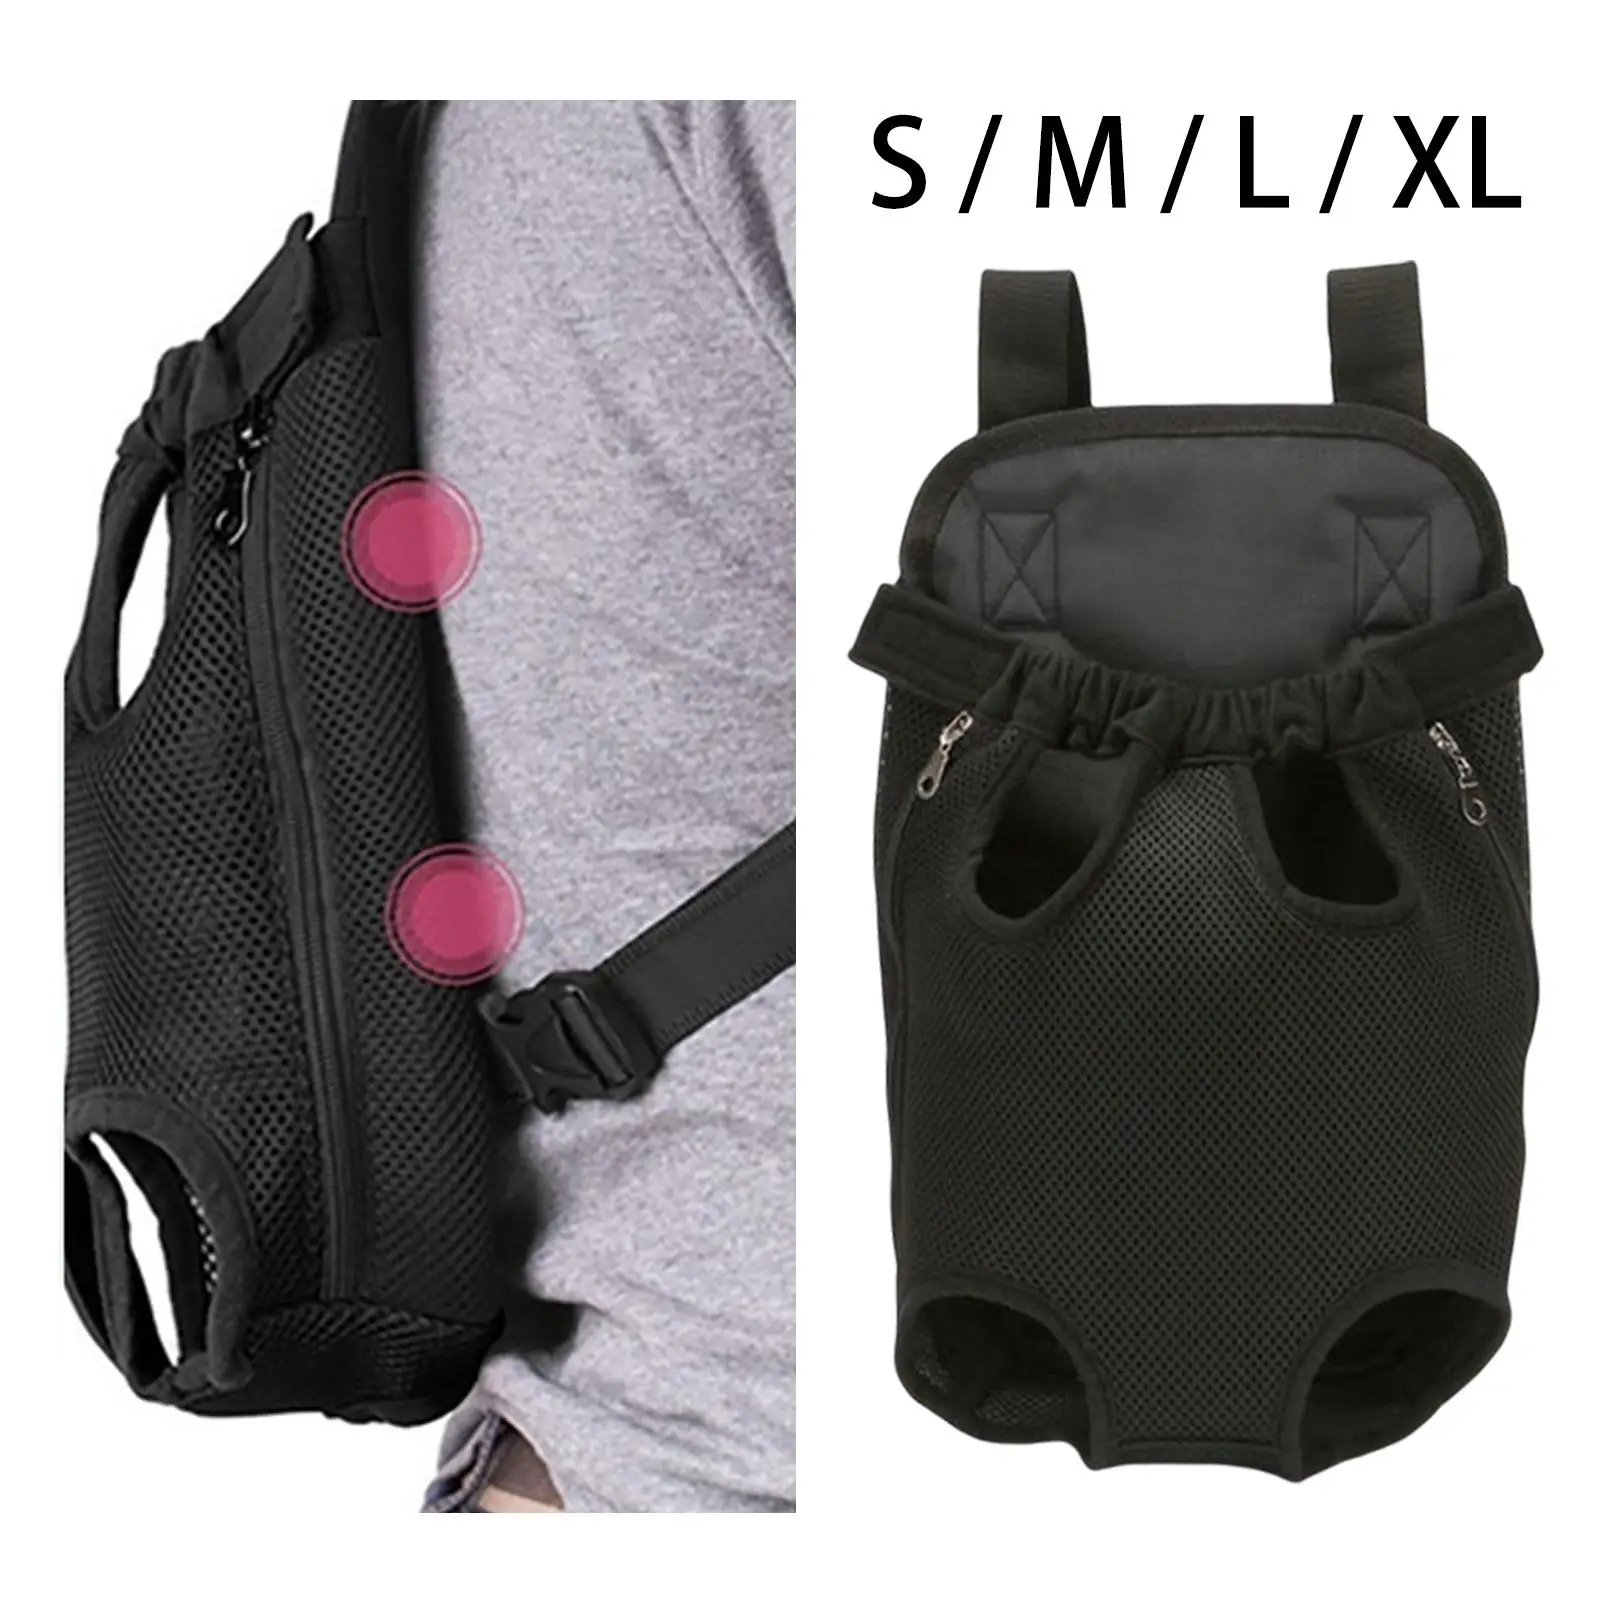 Dog Carrier Backpack Cat Travel Bag Shoulder Strap Portable Puppy Carrier Hands Free Adjustable Front Carrier for Hiking Camping